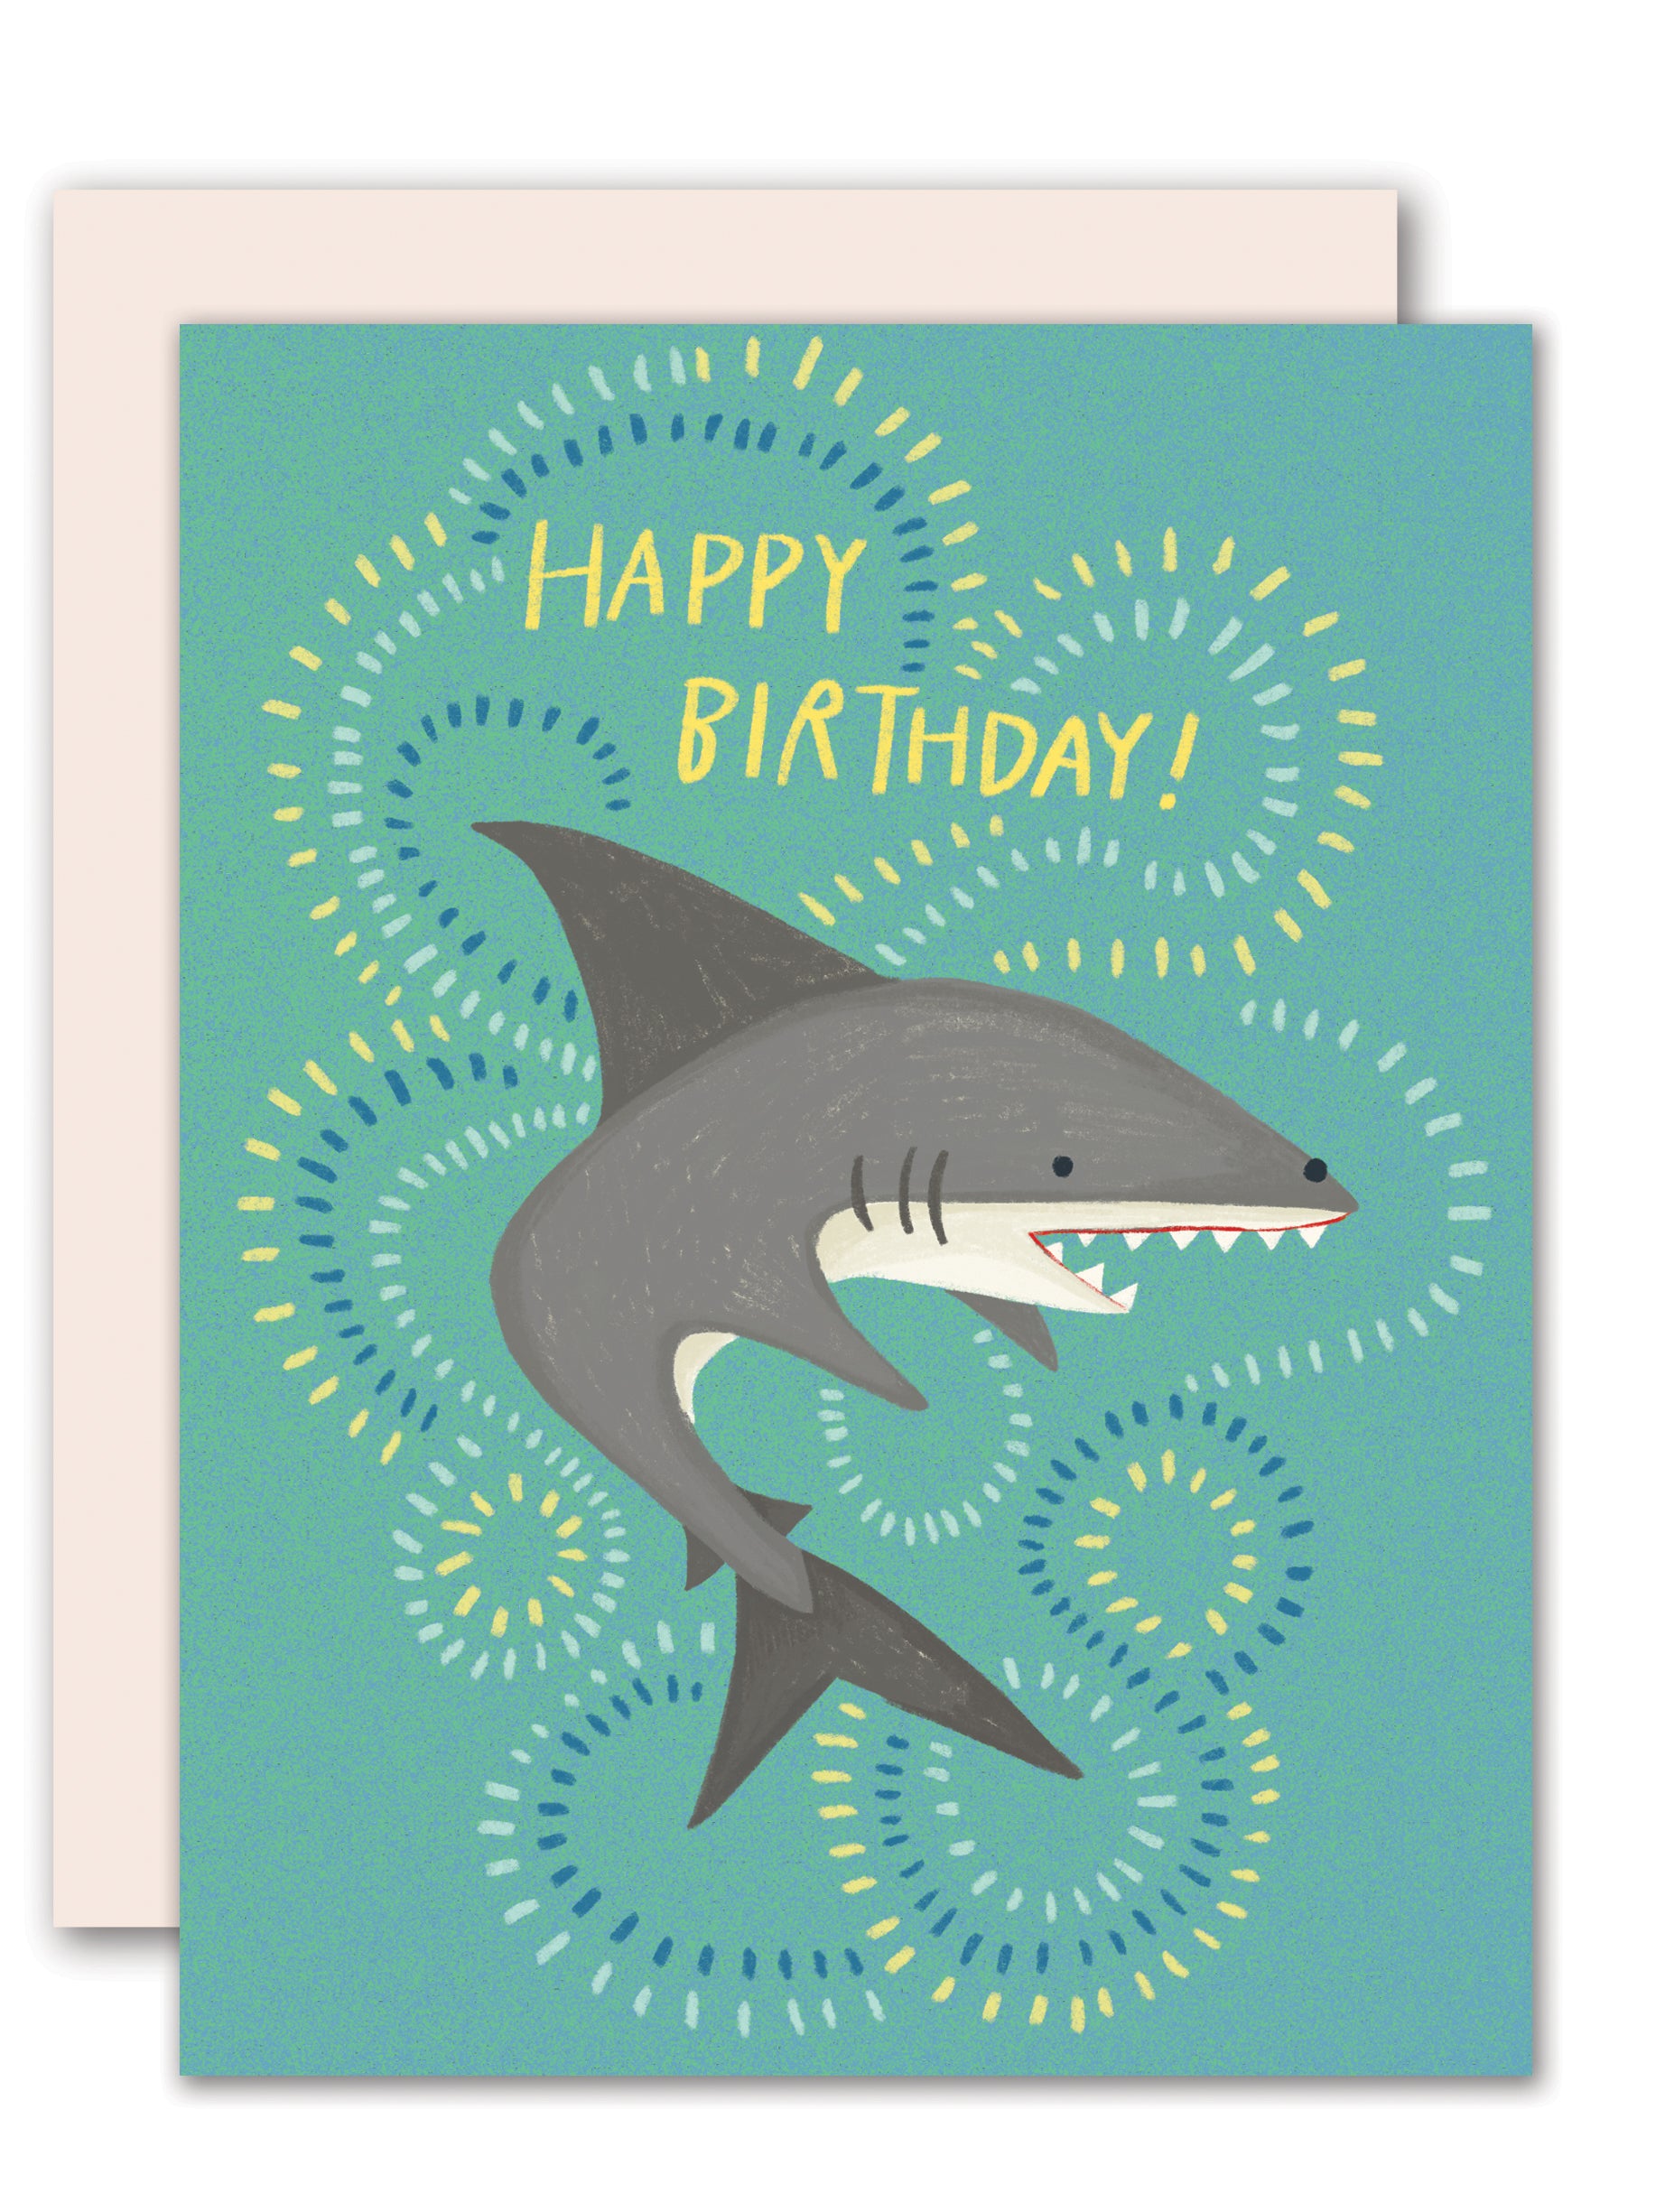 Happy Birthday Shark Card Ubicaciondepersonas cdmx gob mx